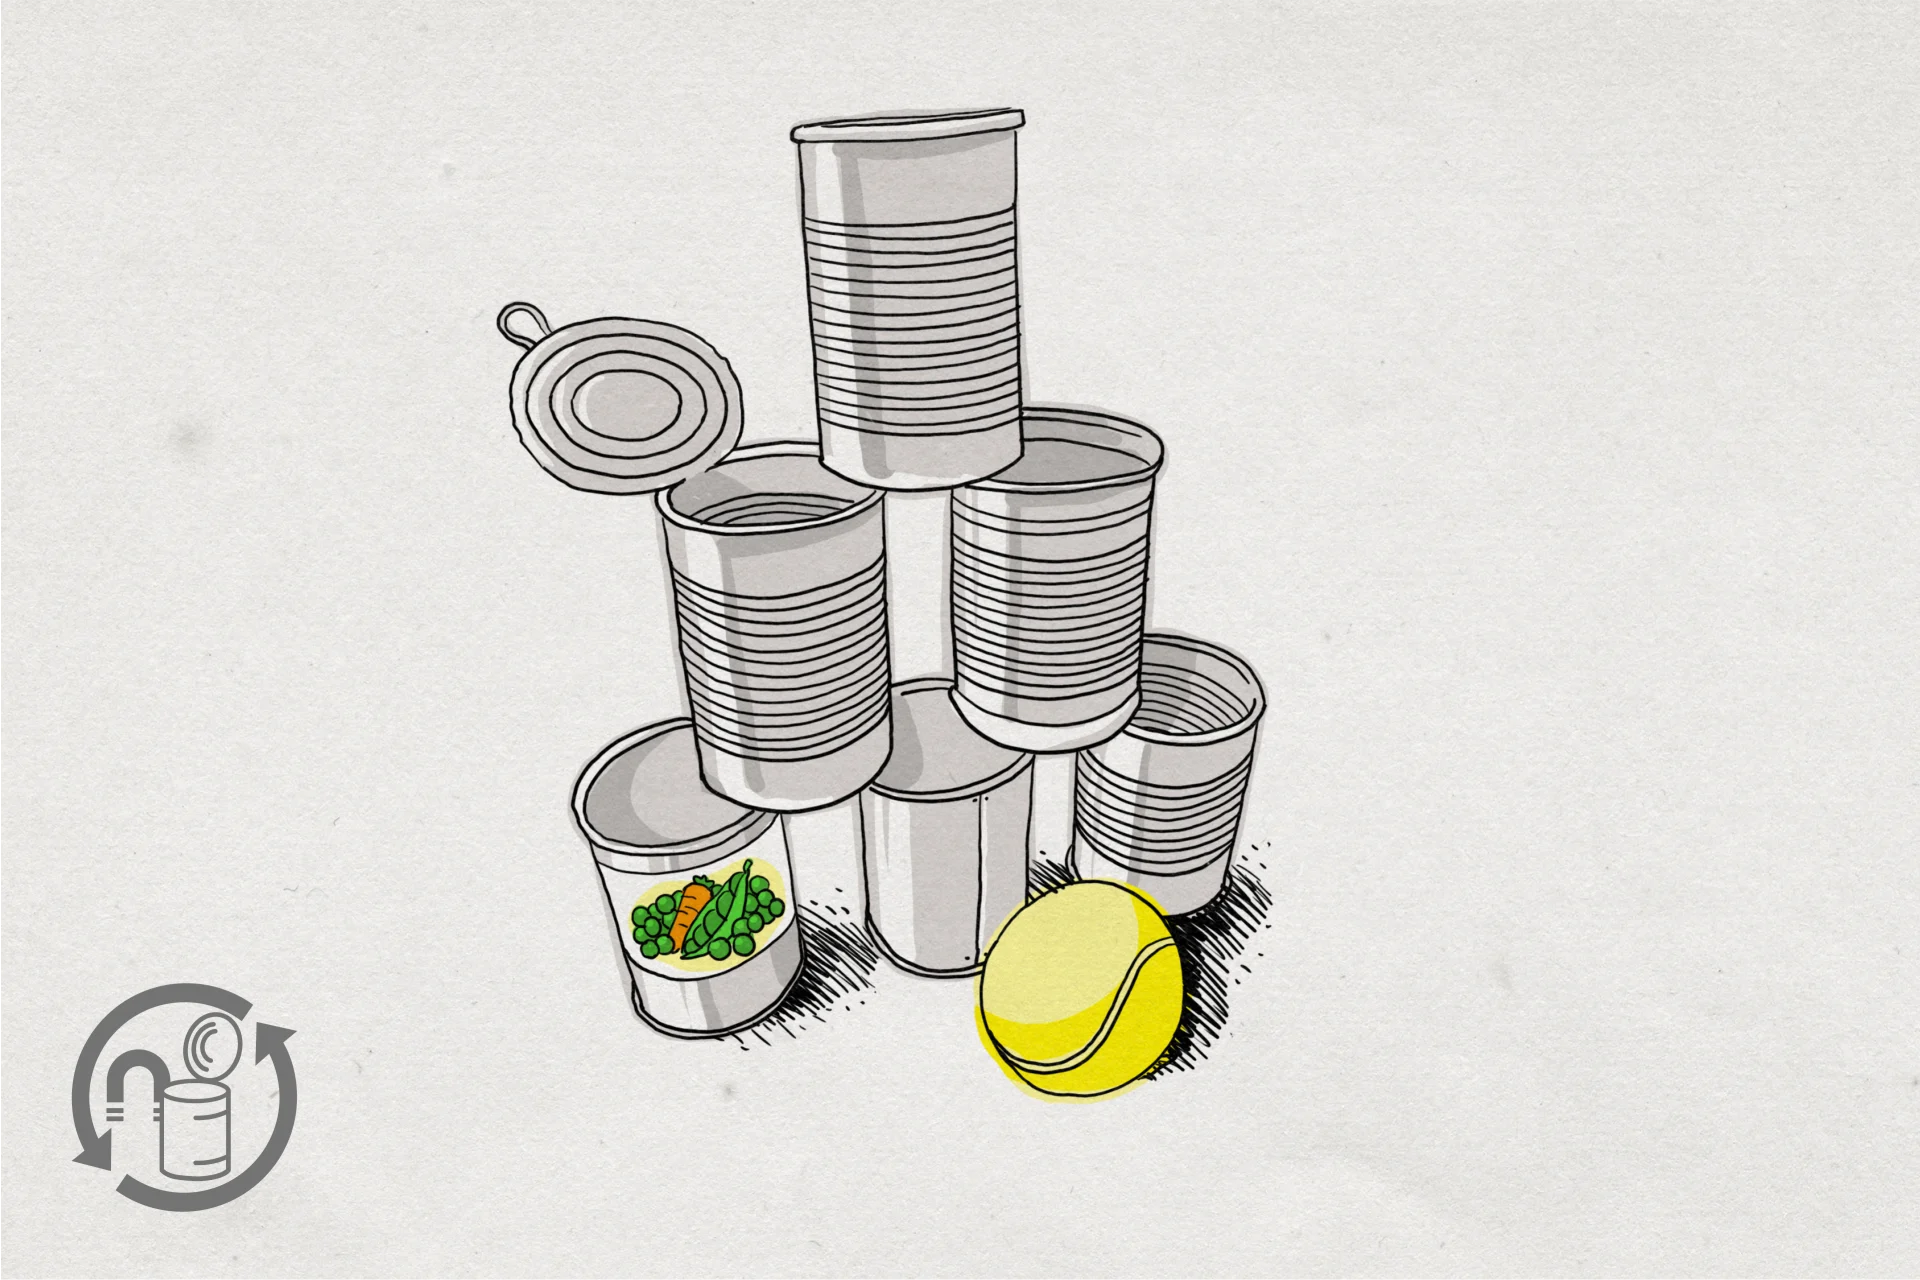 Illustration von einem gelben Tennisball neben einem Stapel leerer Konservendosen.